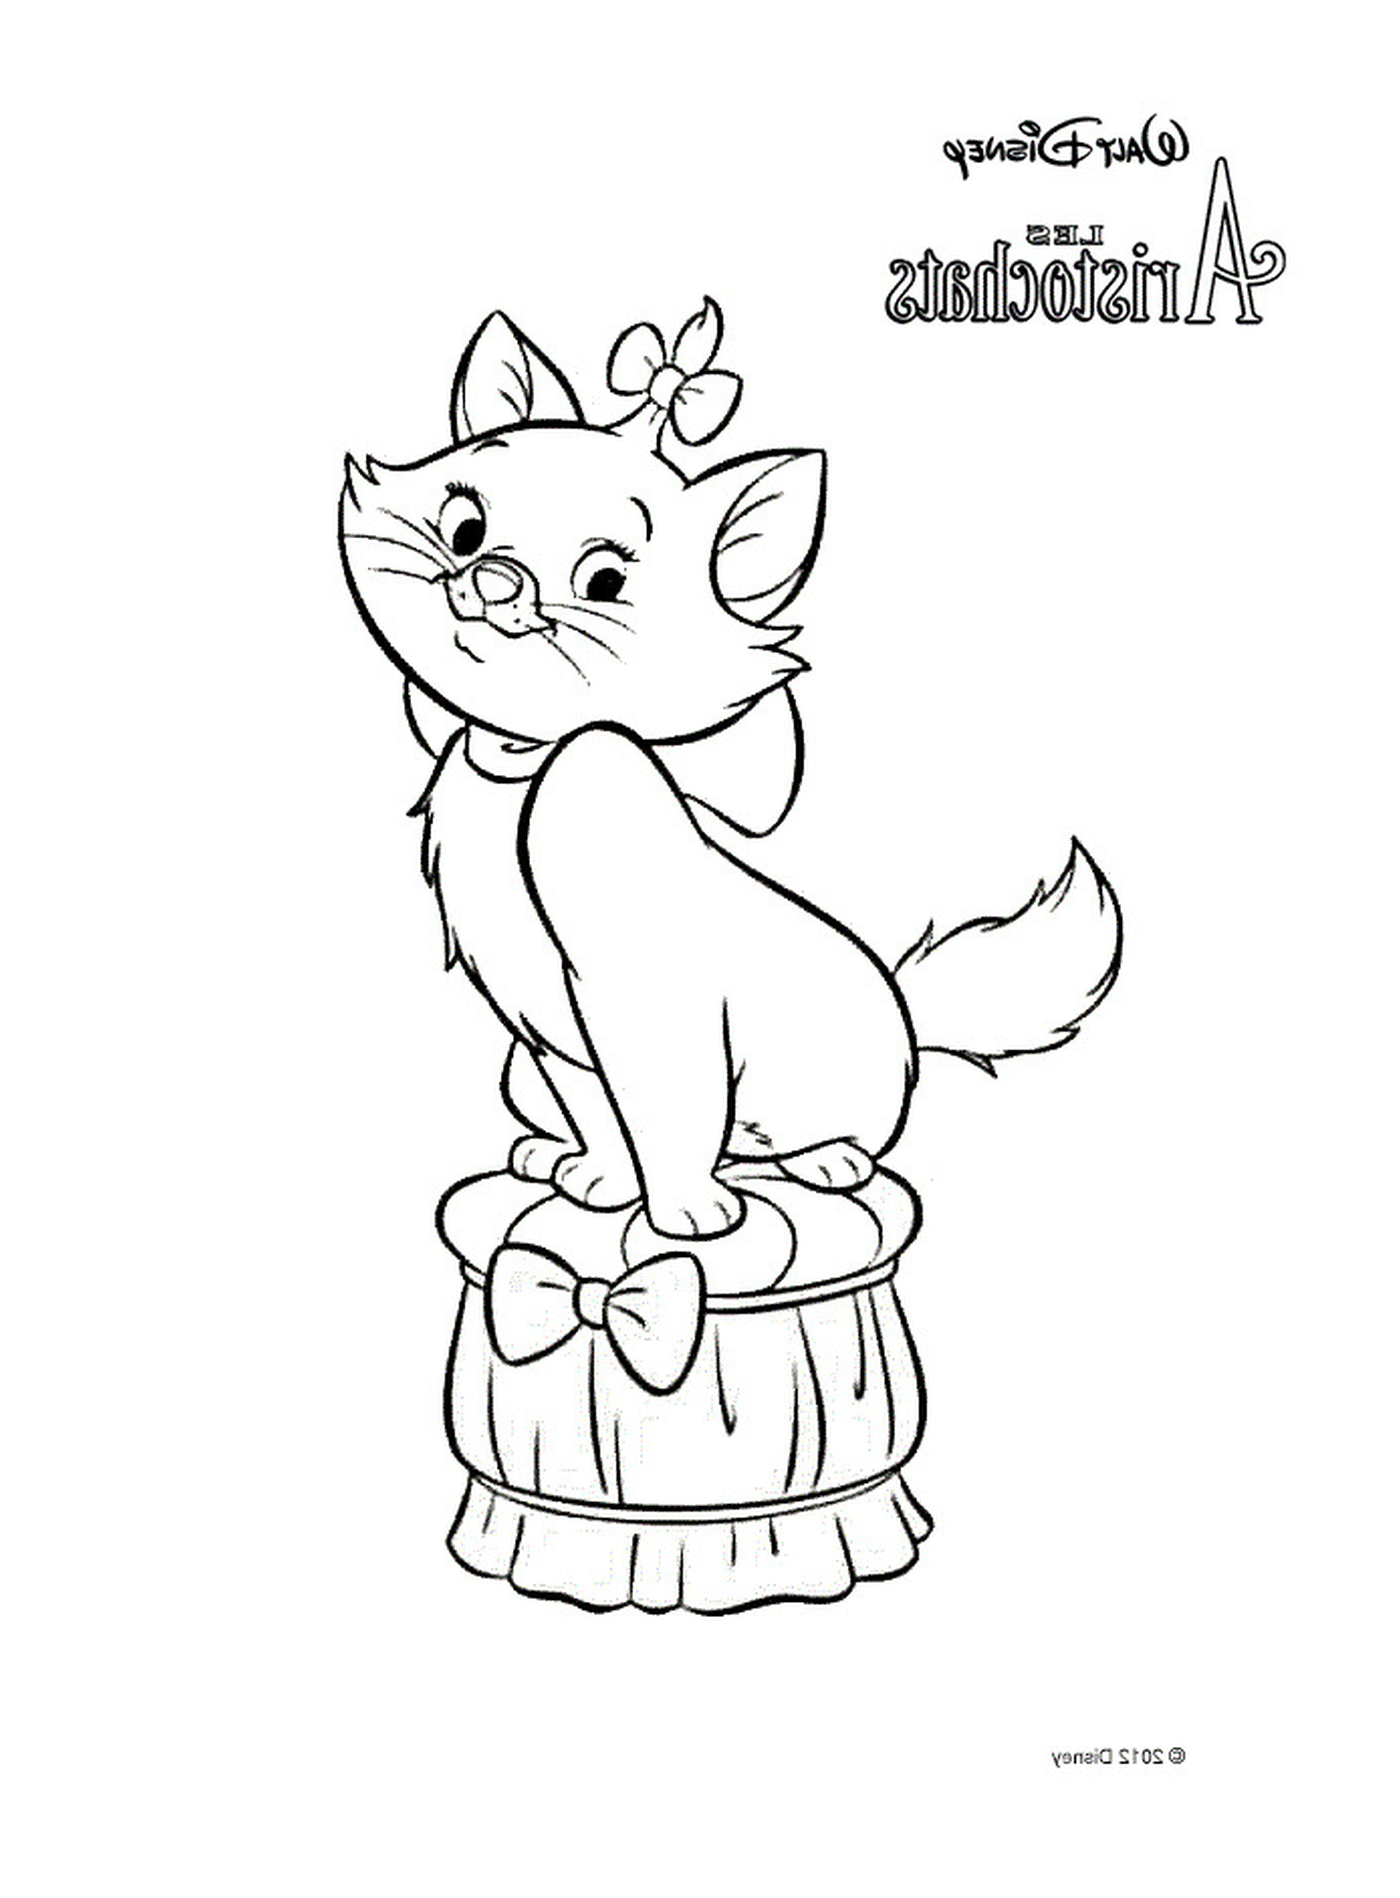  Un gato sentado en un barril 